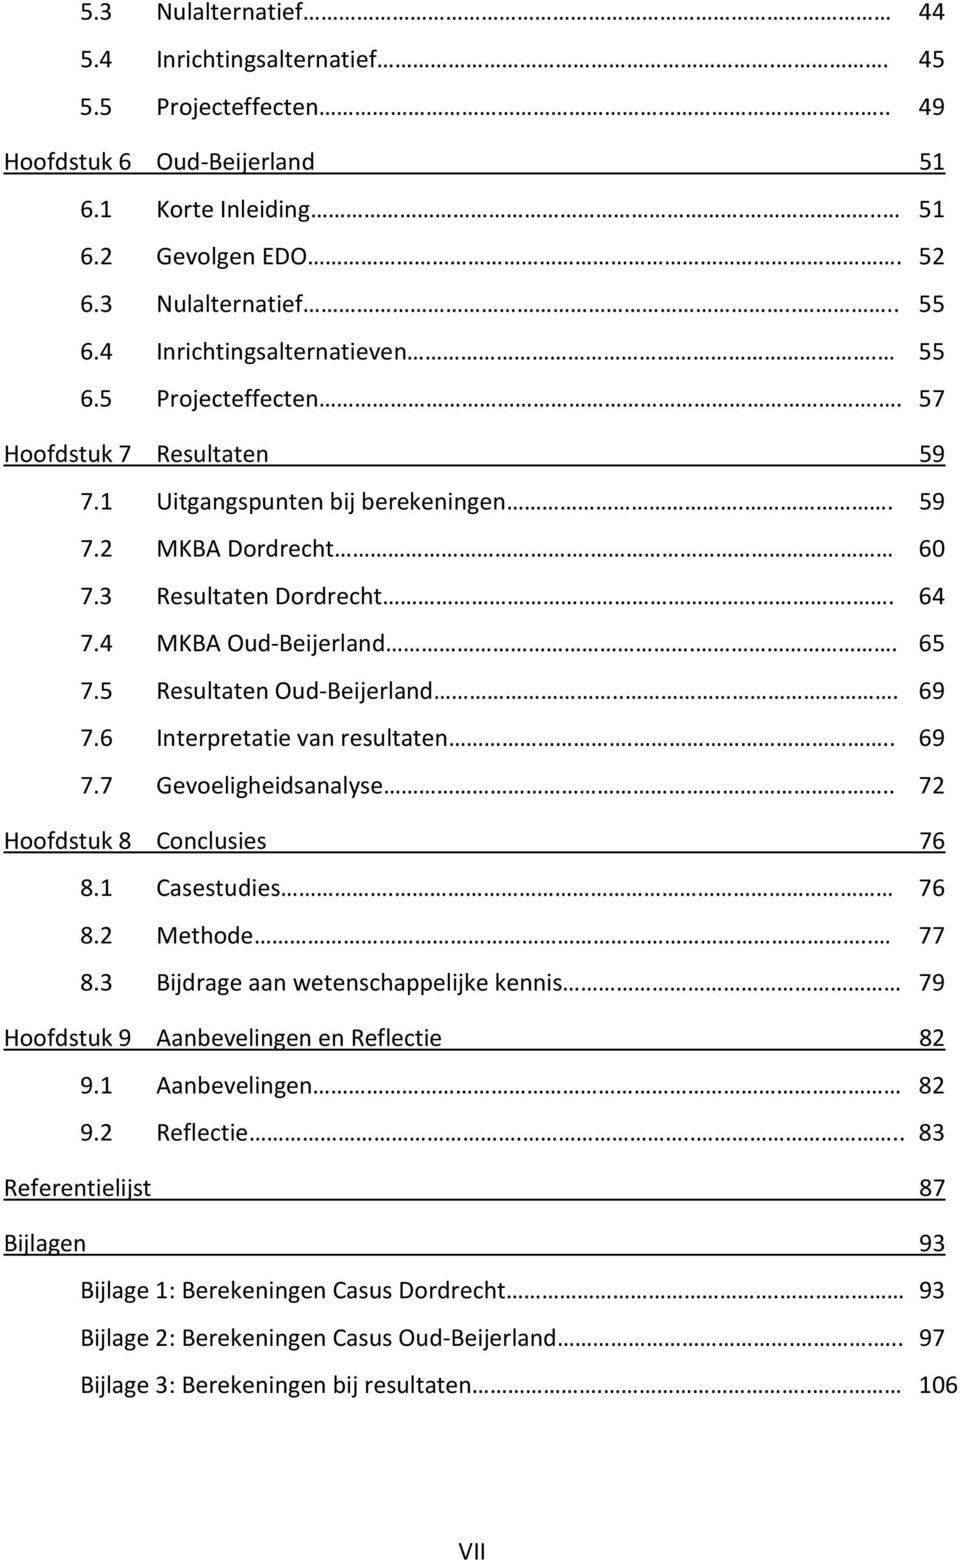 . 65 7.5 Resultaten Oud-Beijerland... 69 7.6 Interpretatie van resultaten... 69 7.7 Gevoeligheidsanalyse.. 72 Hoofdstuk 8 Conclusies 76 8.1 Casestudies. 76 8.2 Methode.. 77 8.